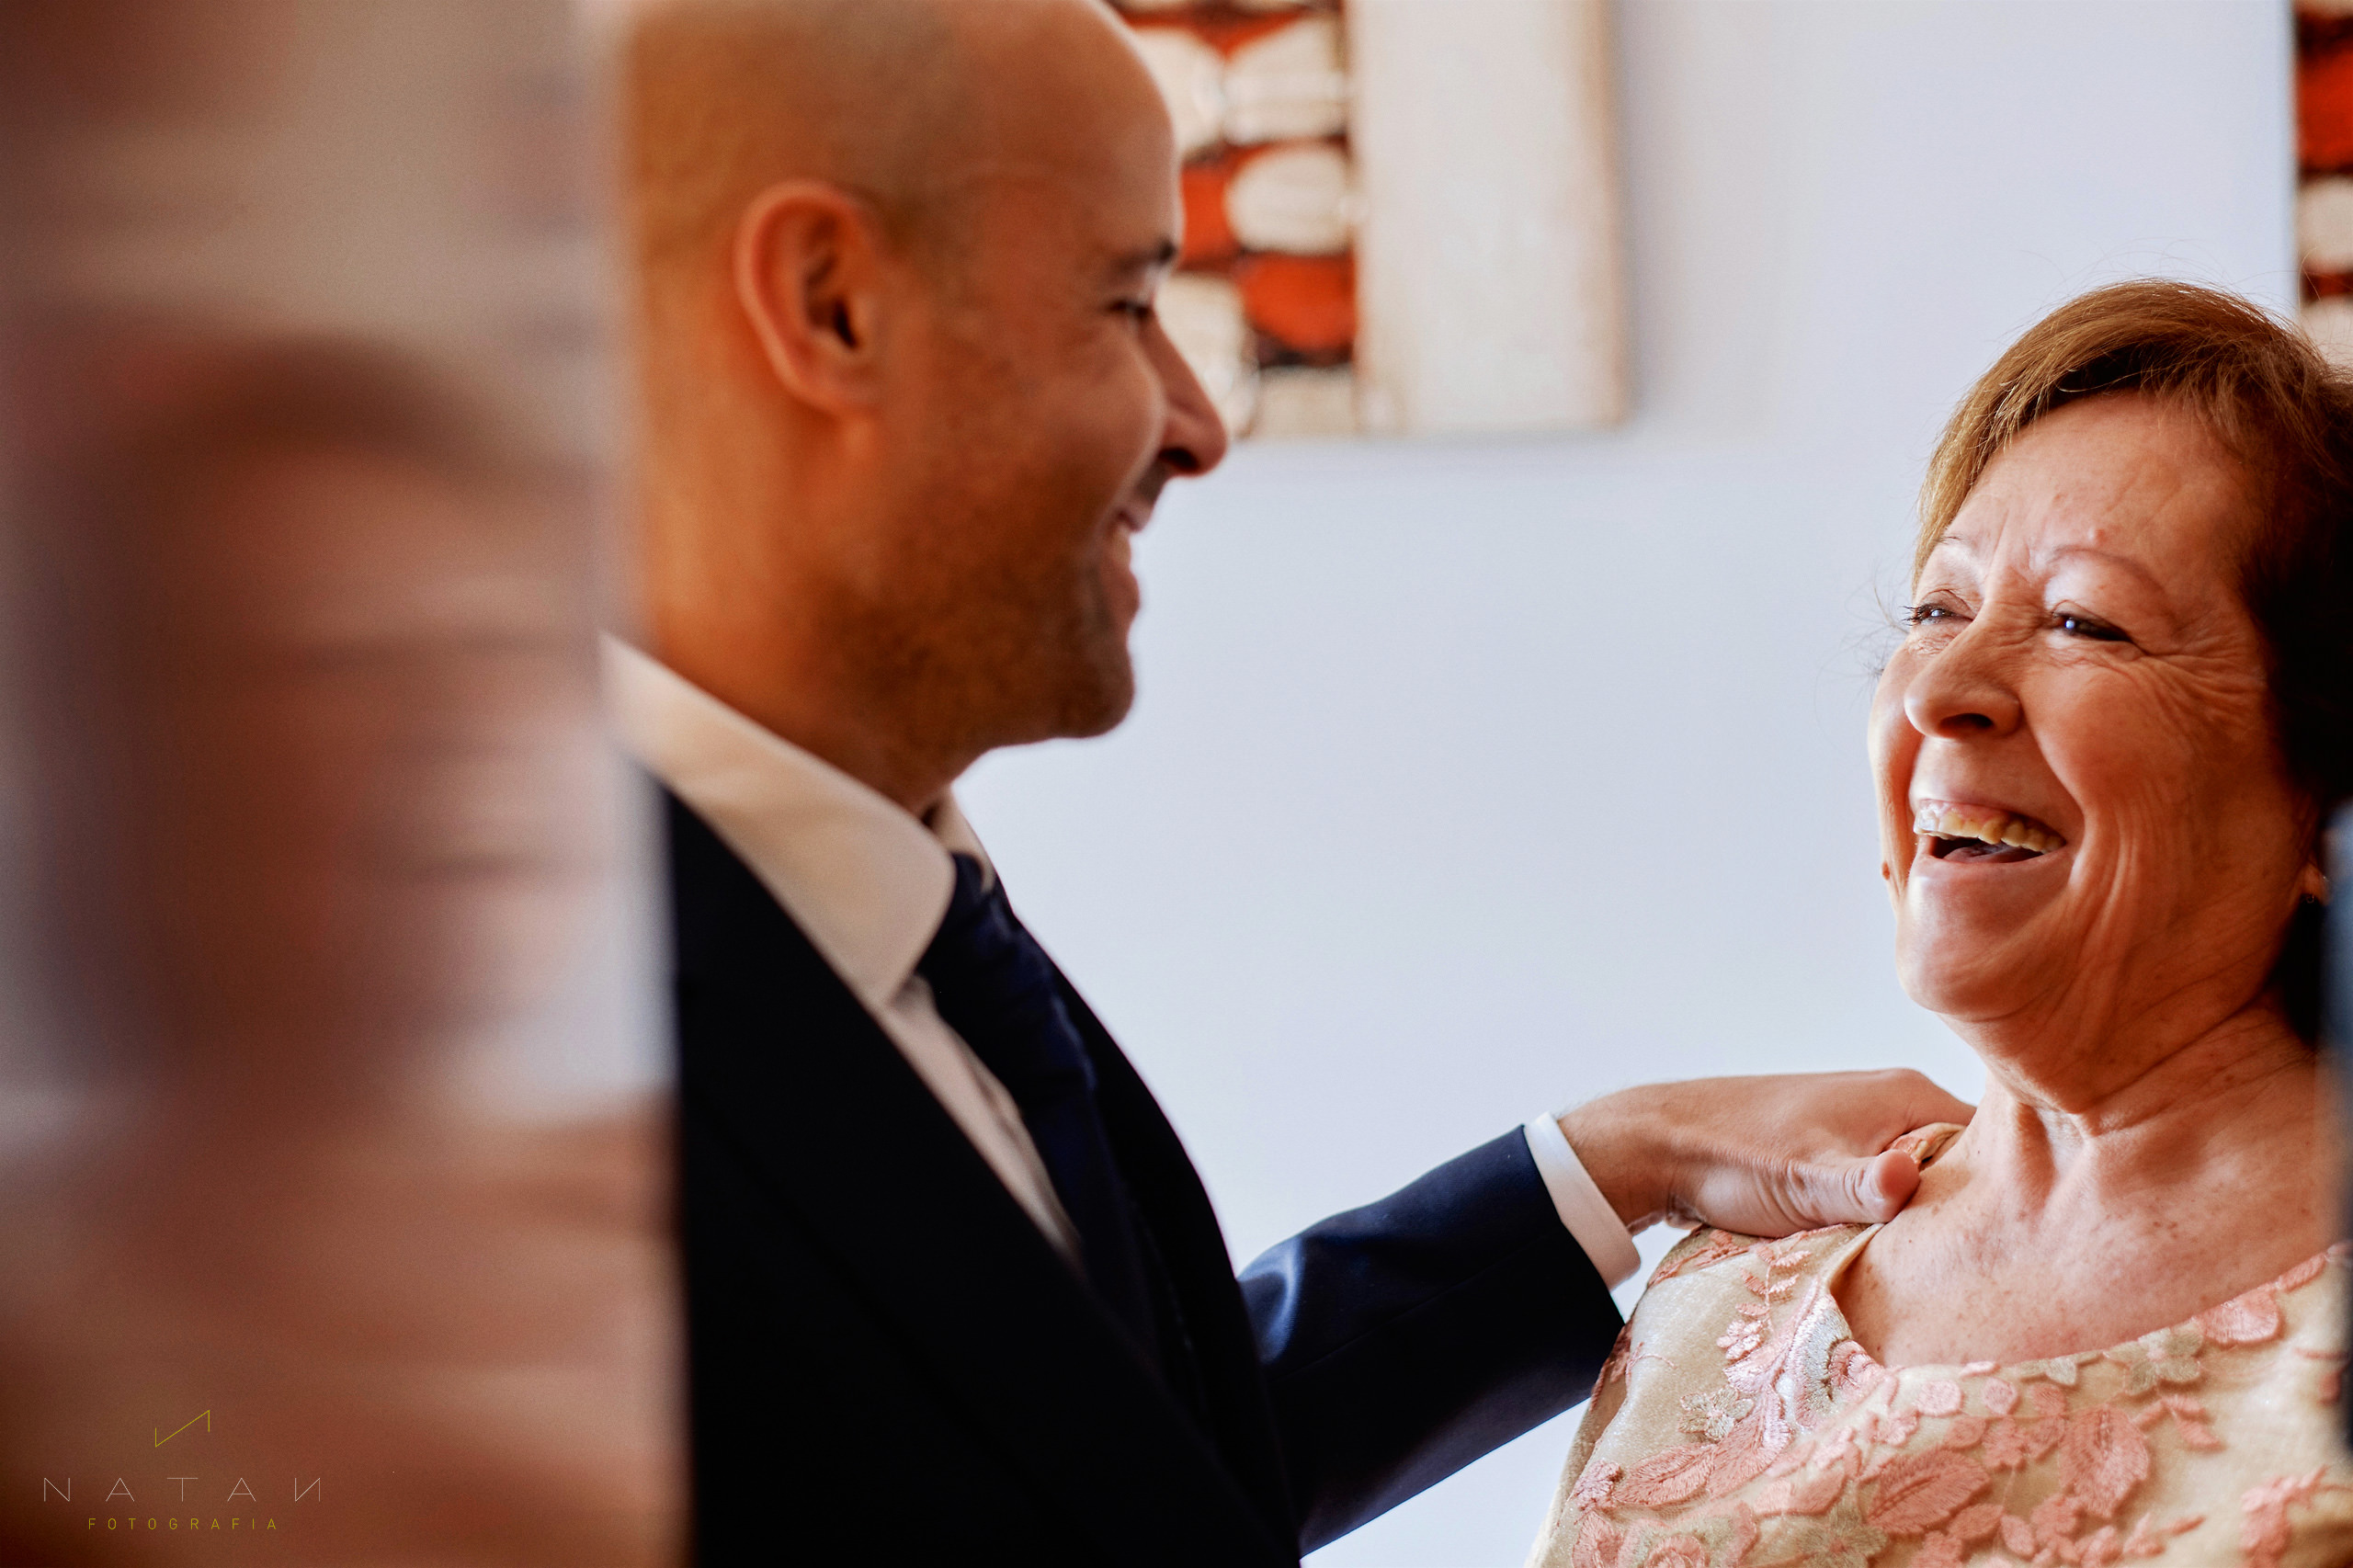 momentos espontaneos de una boda, madre feliz y sonriendo a su hijo